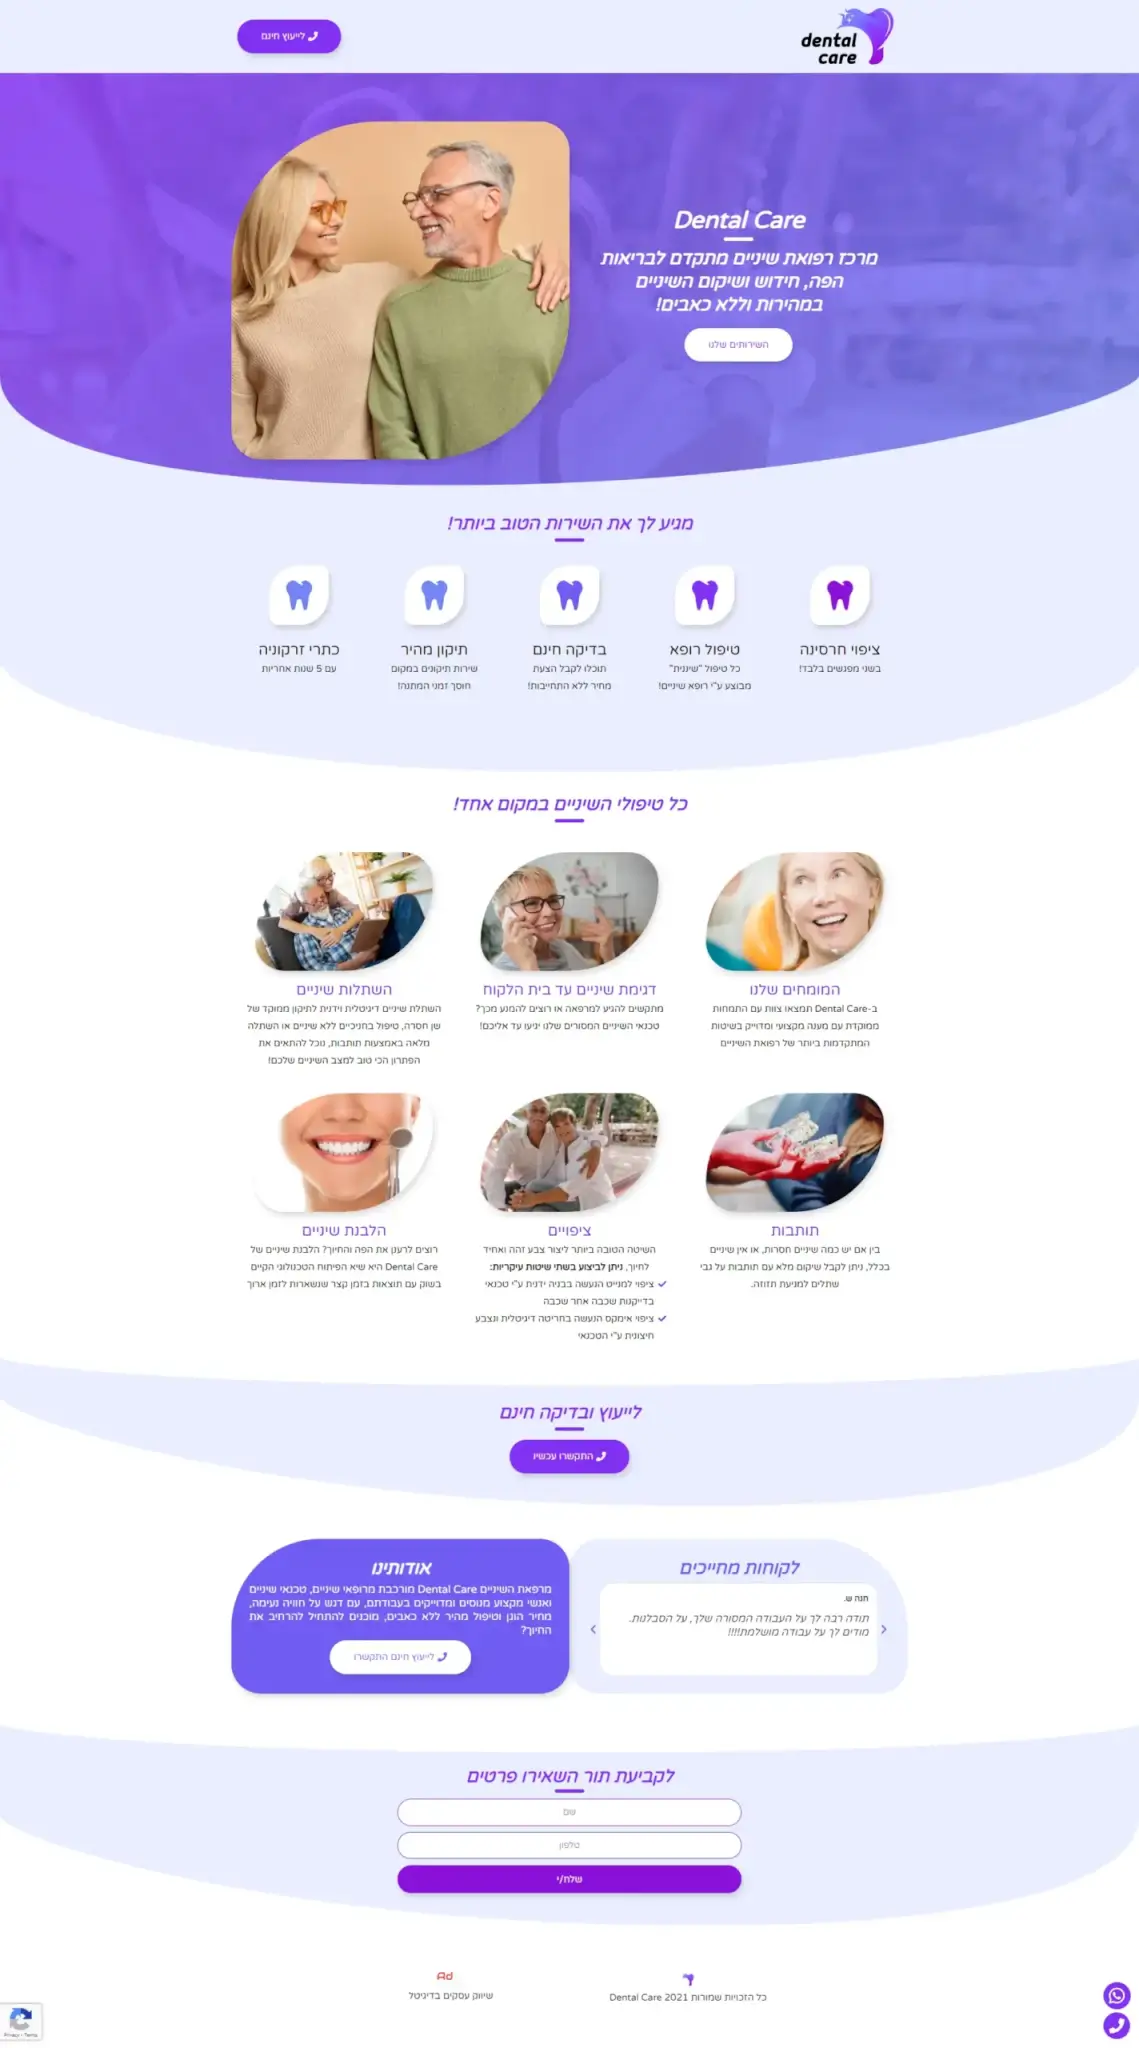 Dental-Care-Clinic-Website-Design-Landing-Page-MNemir-Desktop